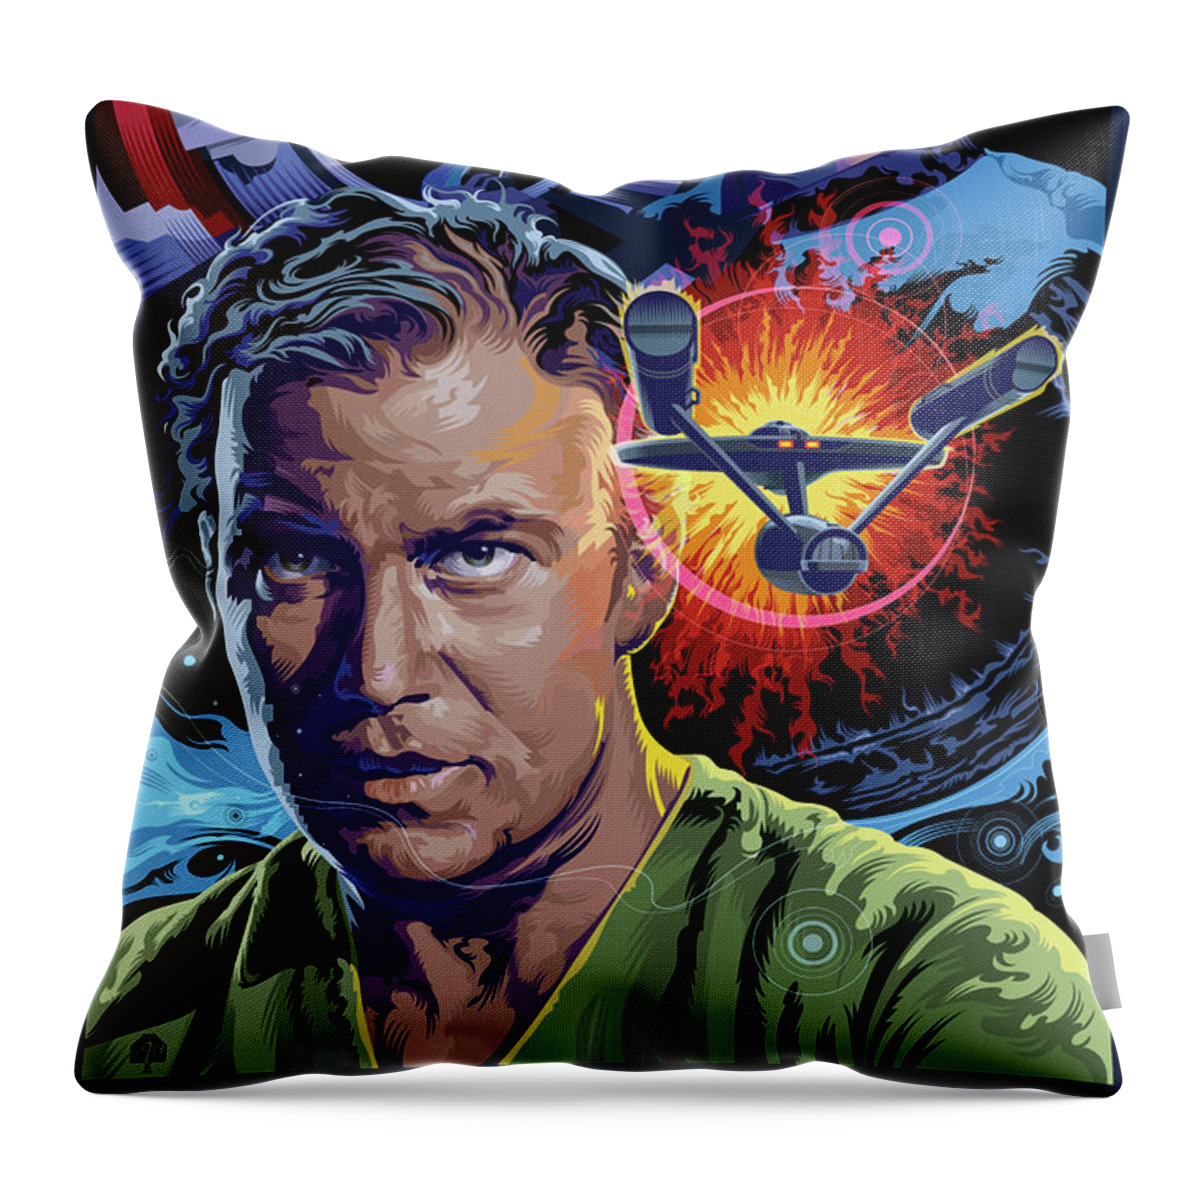 Sci-fi Portrait Collection Throw Pillow featuring the digital art Star Trek Doomsday Machine by Garth Glazier